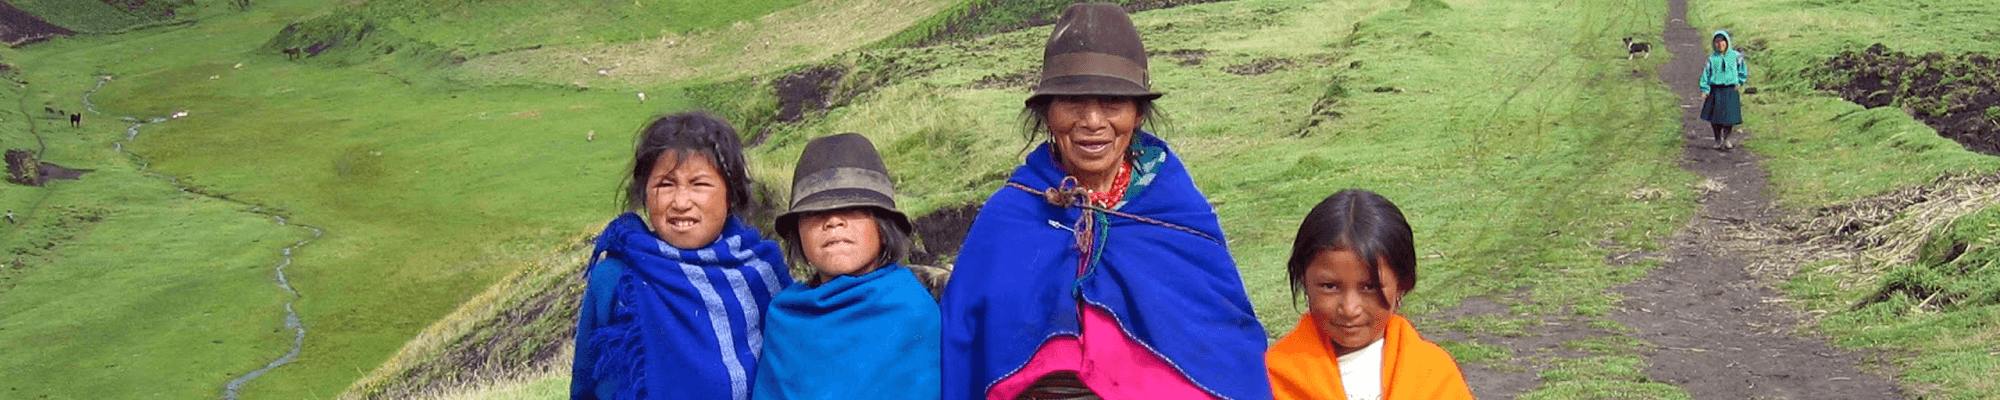 in Peru, 3 children and 1 woman